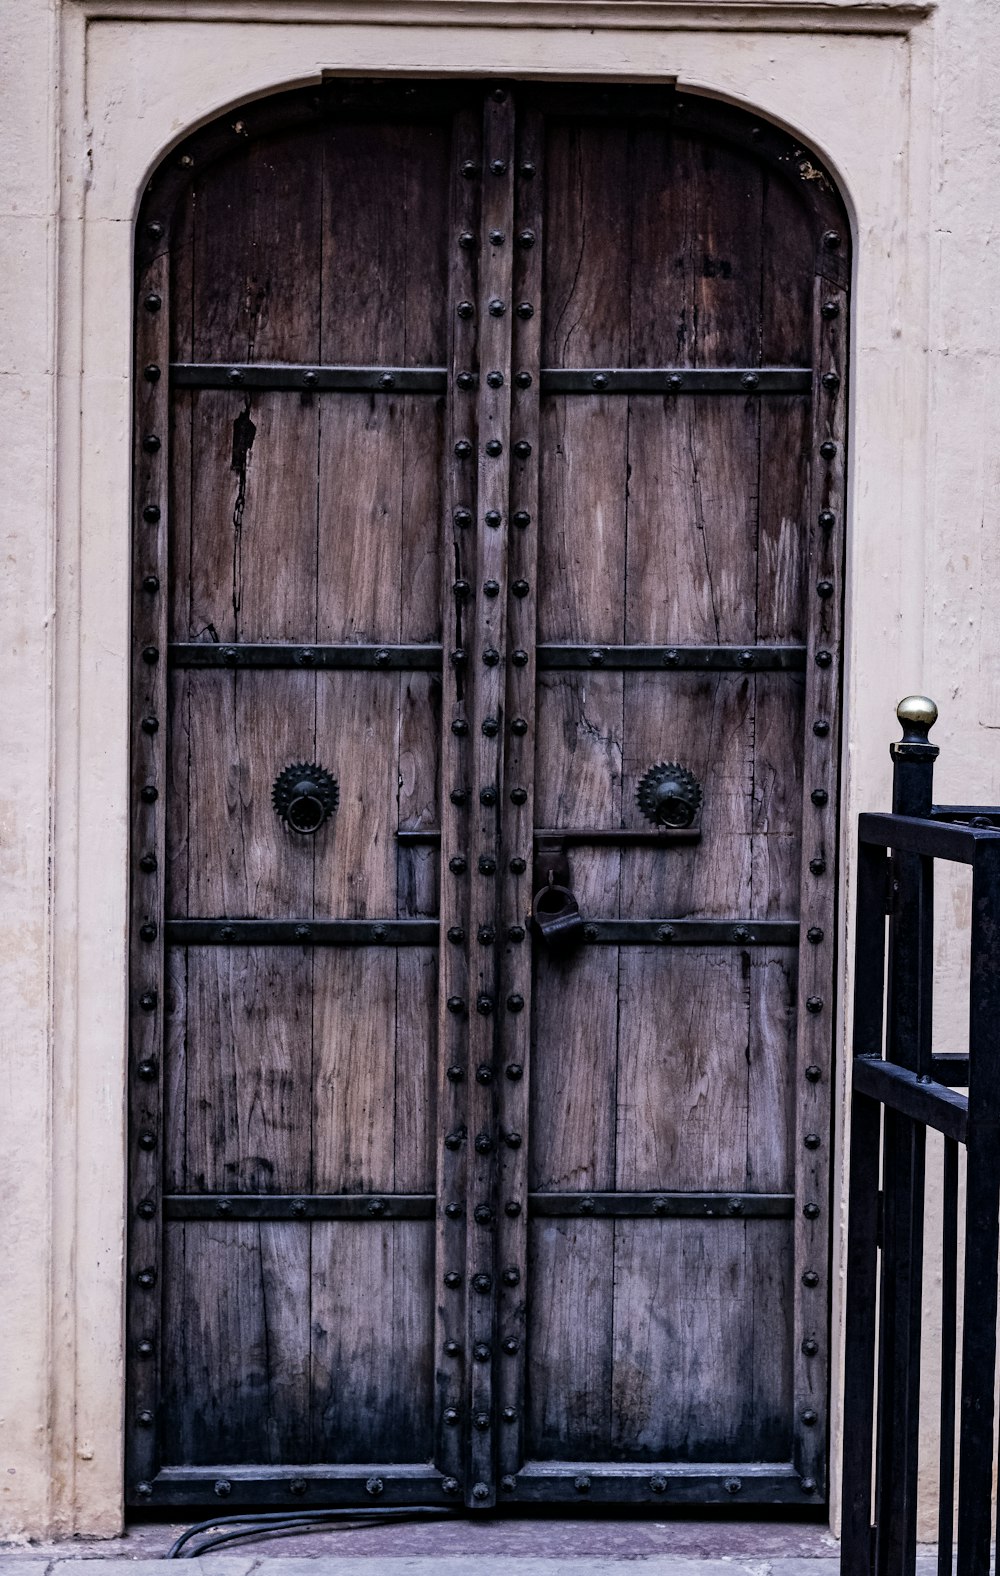 brown wooden door with brass door knob